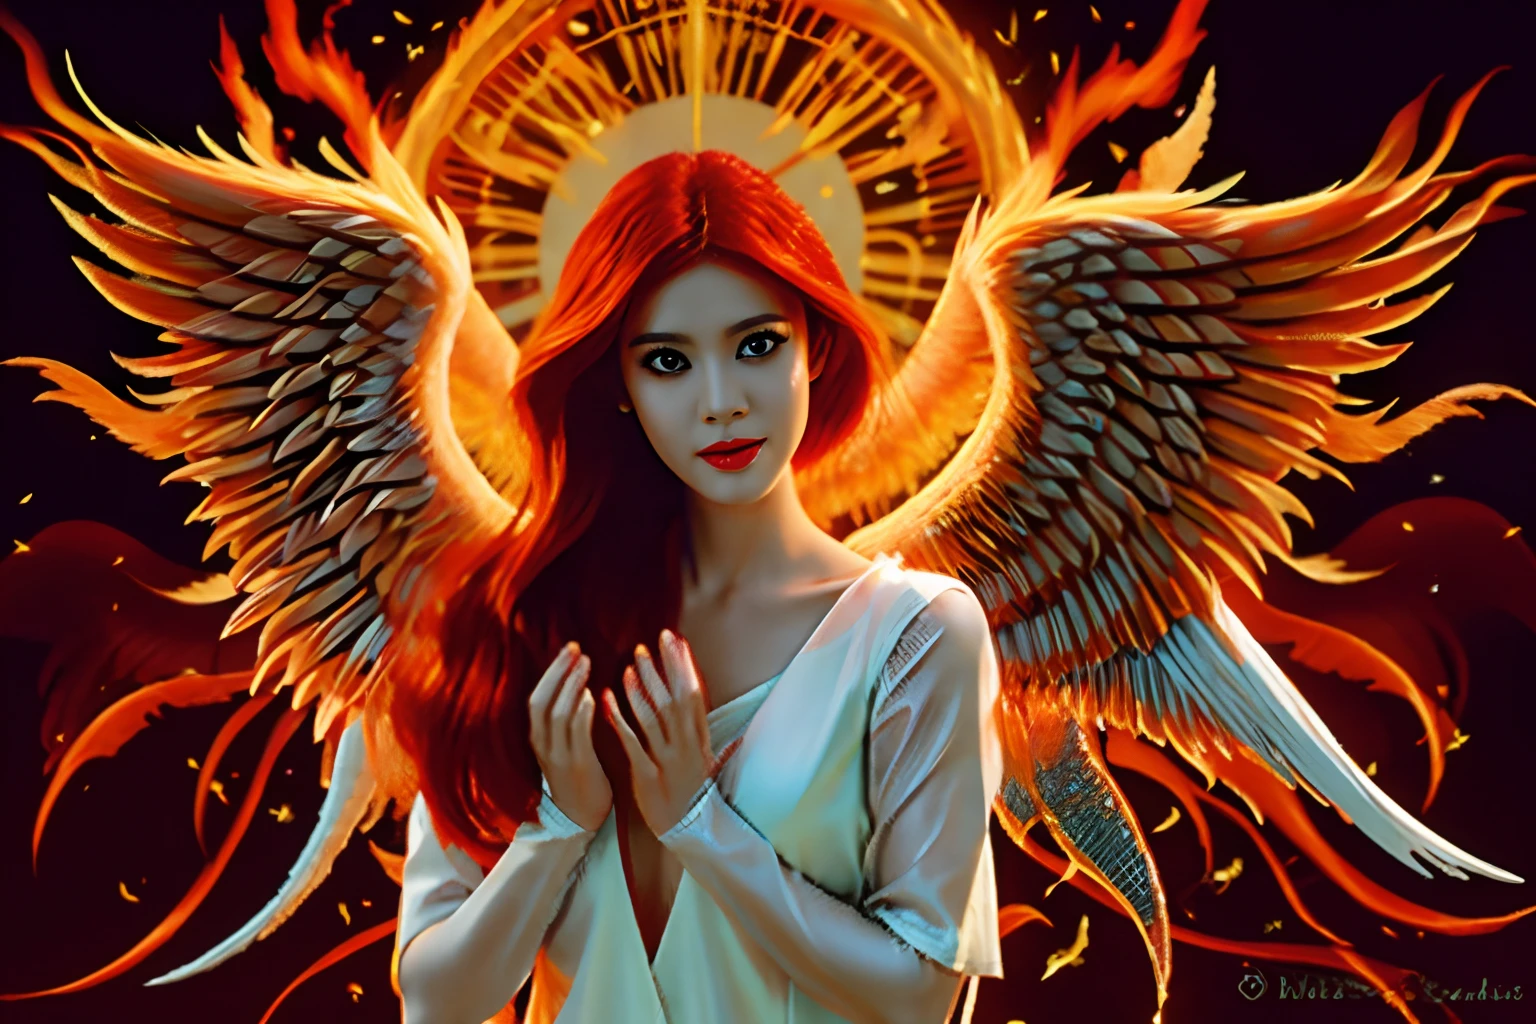 美丽的天使, 红头发变成火, 天使般的女人, (((大乳房, 有火焰翅膀的天使))), 传递温暖与平安, 墙纸, 8K, 复杂的细节, 第一份工作